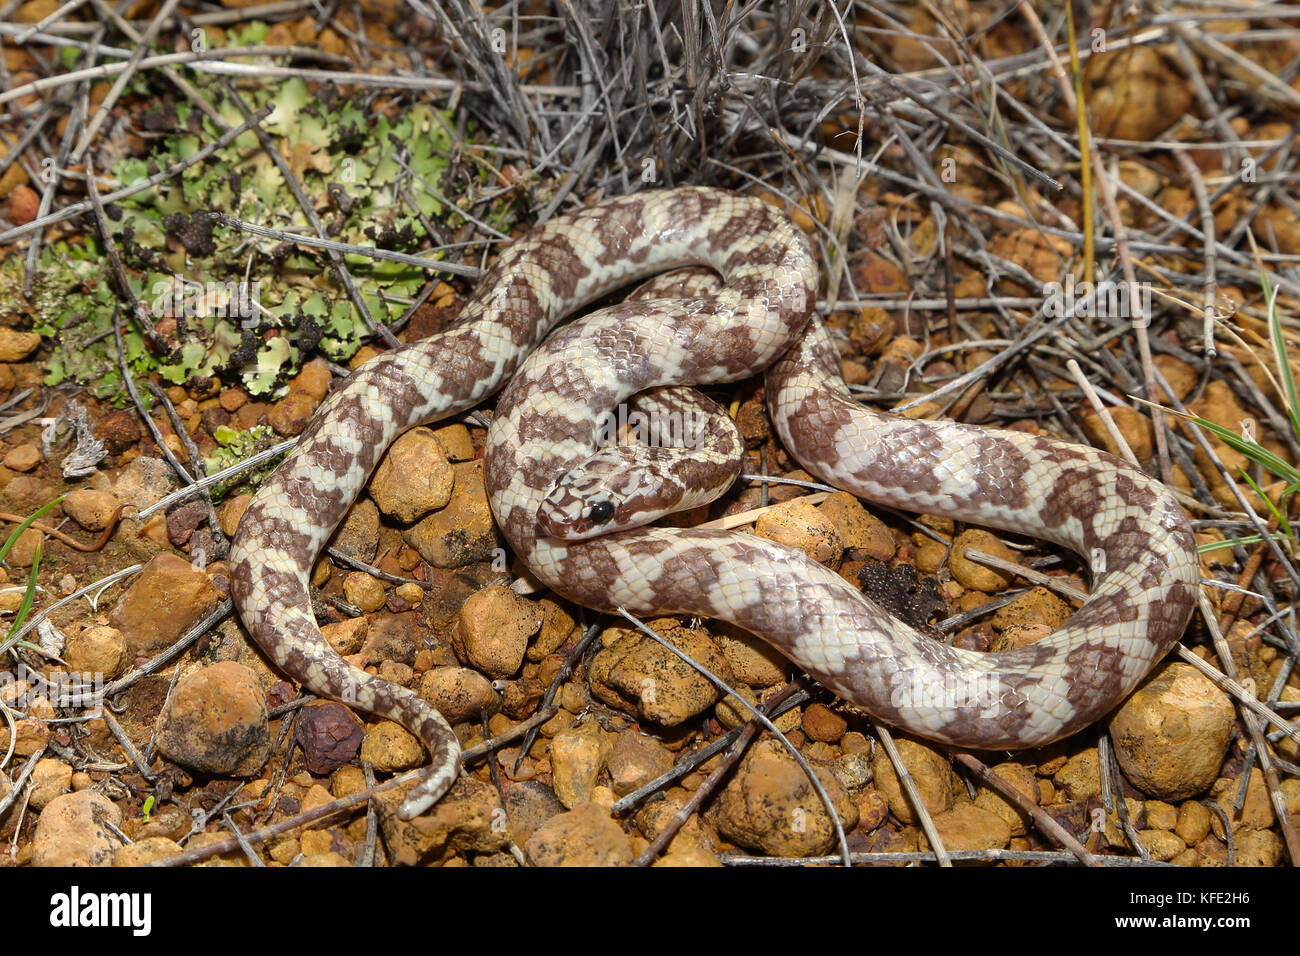 Serpent de Rosen (Suta fasciata) de couleur claire mue enroulé sur sol pierreux. Il mesure environ 38 cm de long. Yalgoo, région du Midwest, Australie occidentale, Australie Banque D'Images